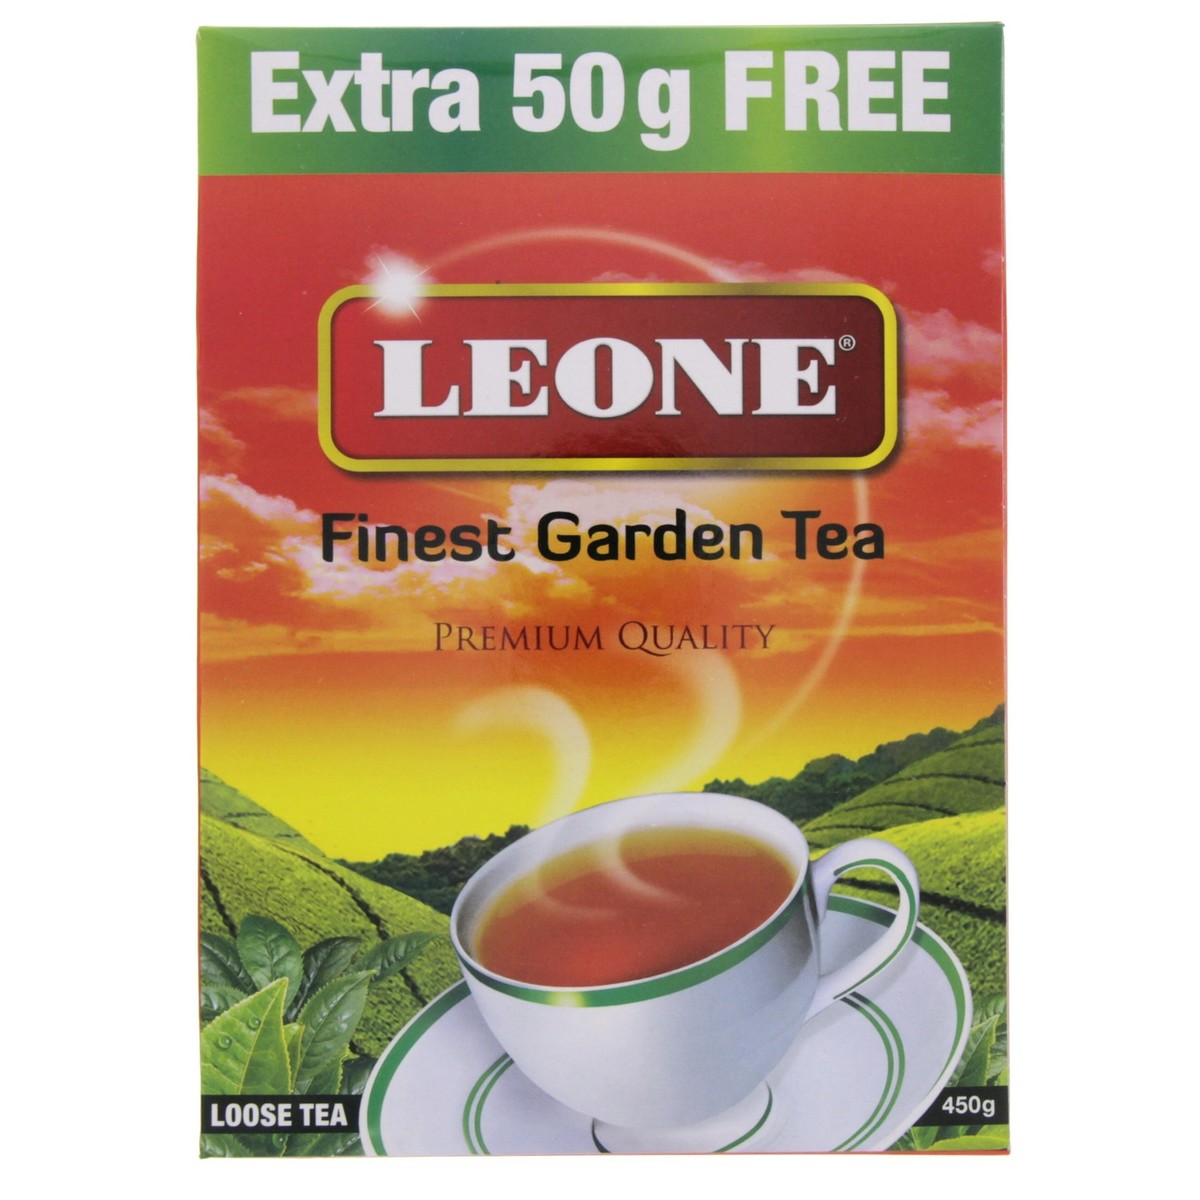 Leone Finest Garden Tea 450g